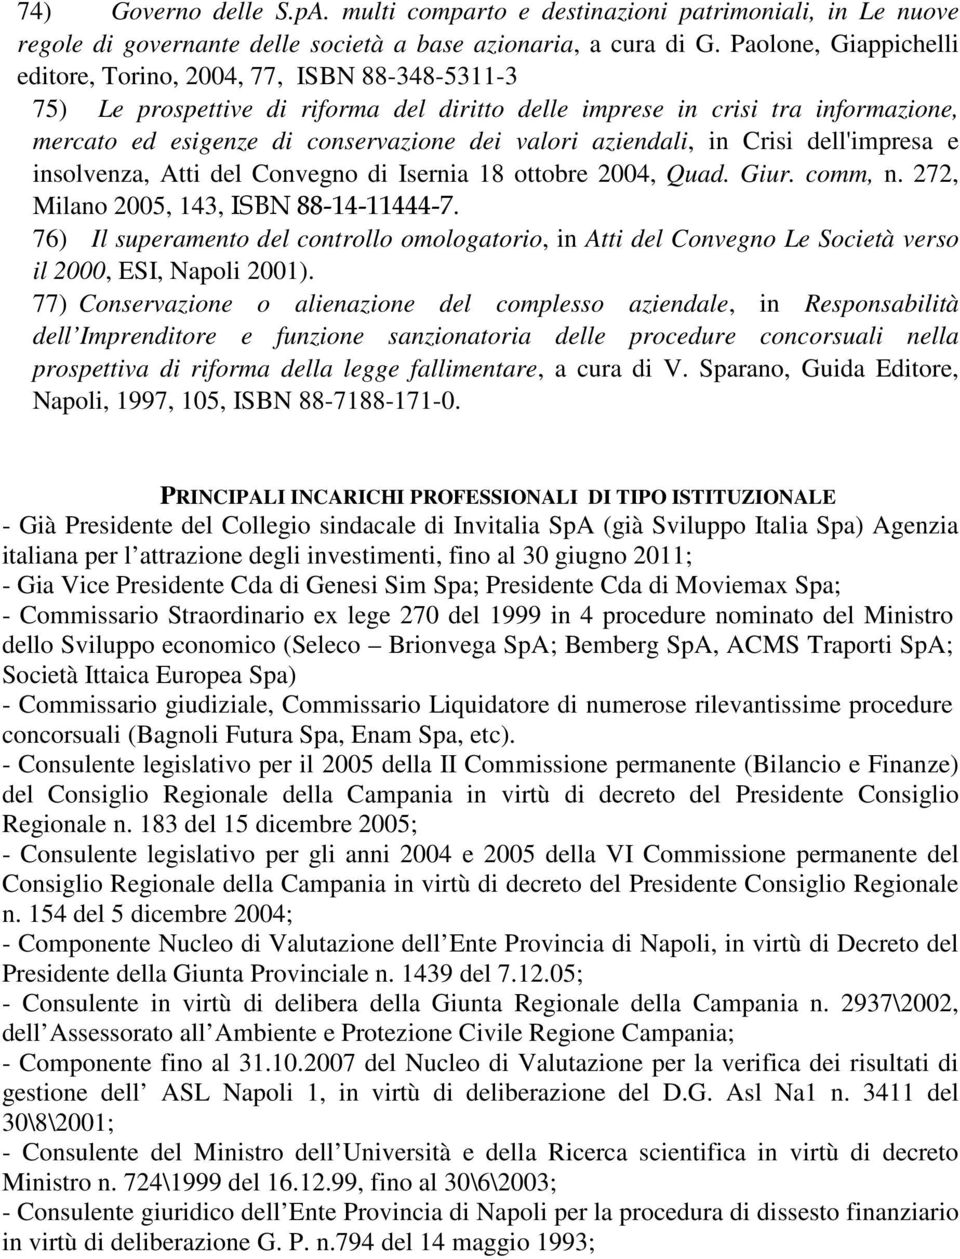 aziendali, in Crisi dell'impresa e insolvenza, Atti del Convegno di Isernia 18 ottobre 2004, Quad. Giur. comm, n. 272, Milano 2005, 143, ISBN 88-14-11444-7.